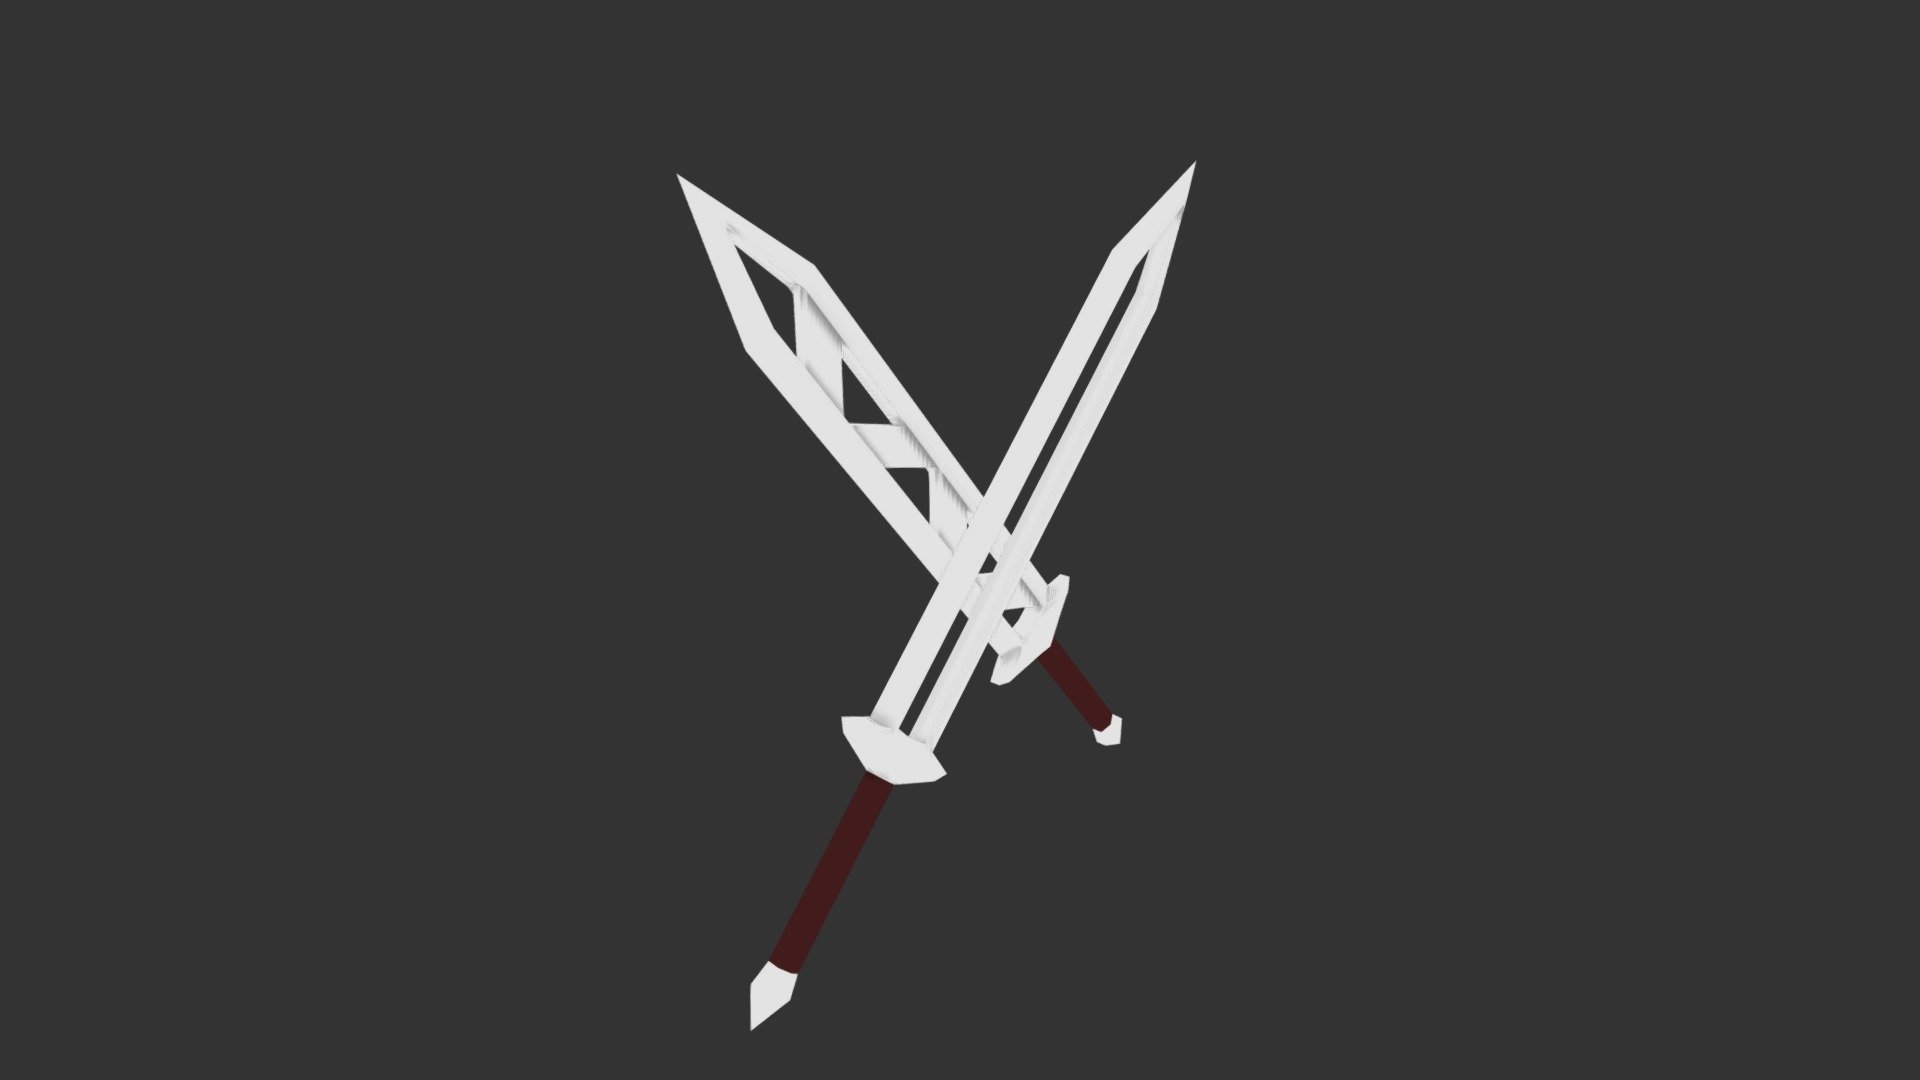 Megaera's Swords